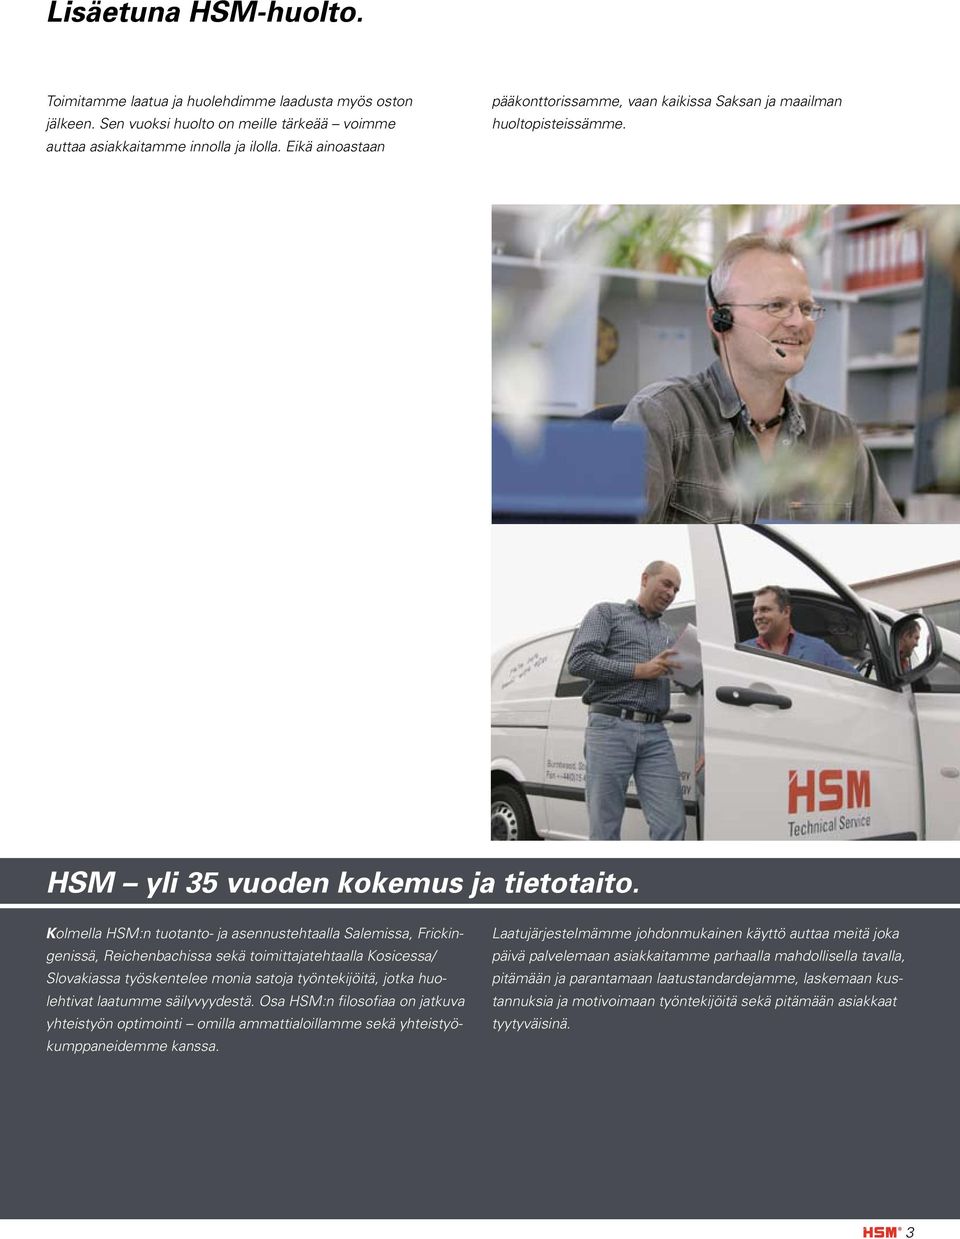 Kolmella HSM:n tuotanto- ja asennustehtaalla Salemissa, Frickingenissä, Reichenbachissa sekä toimittajatehtaalla Kosicessa/ Slovakiassa työskentelee monia satoja työntekijöitä, jotka huolehtivat